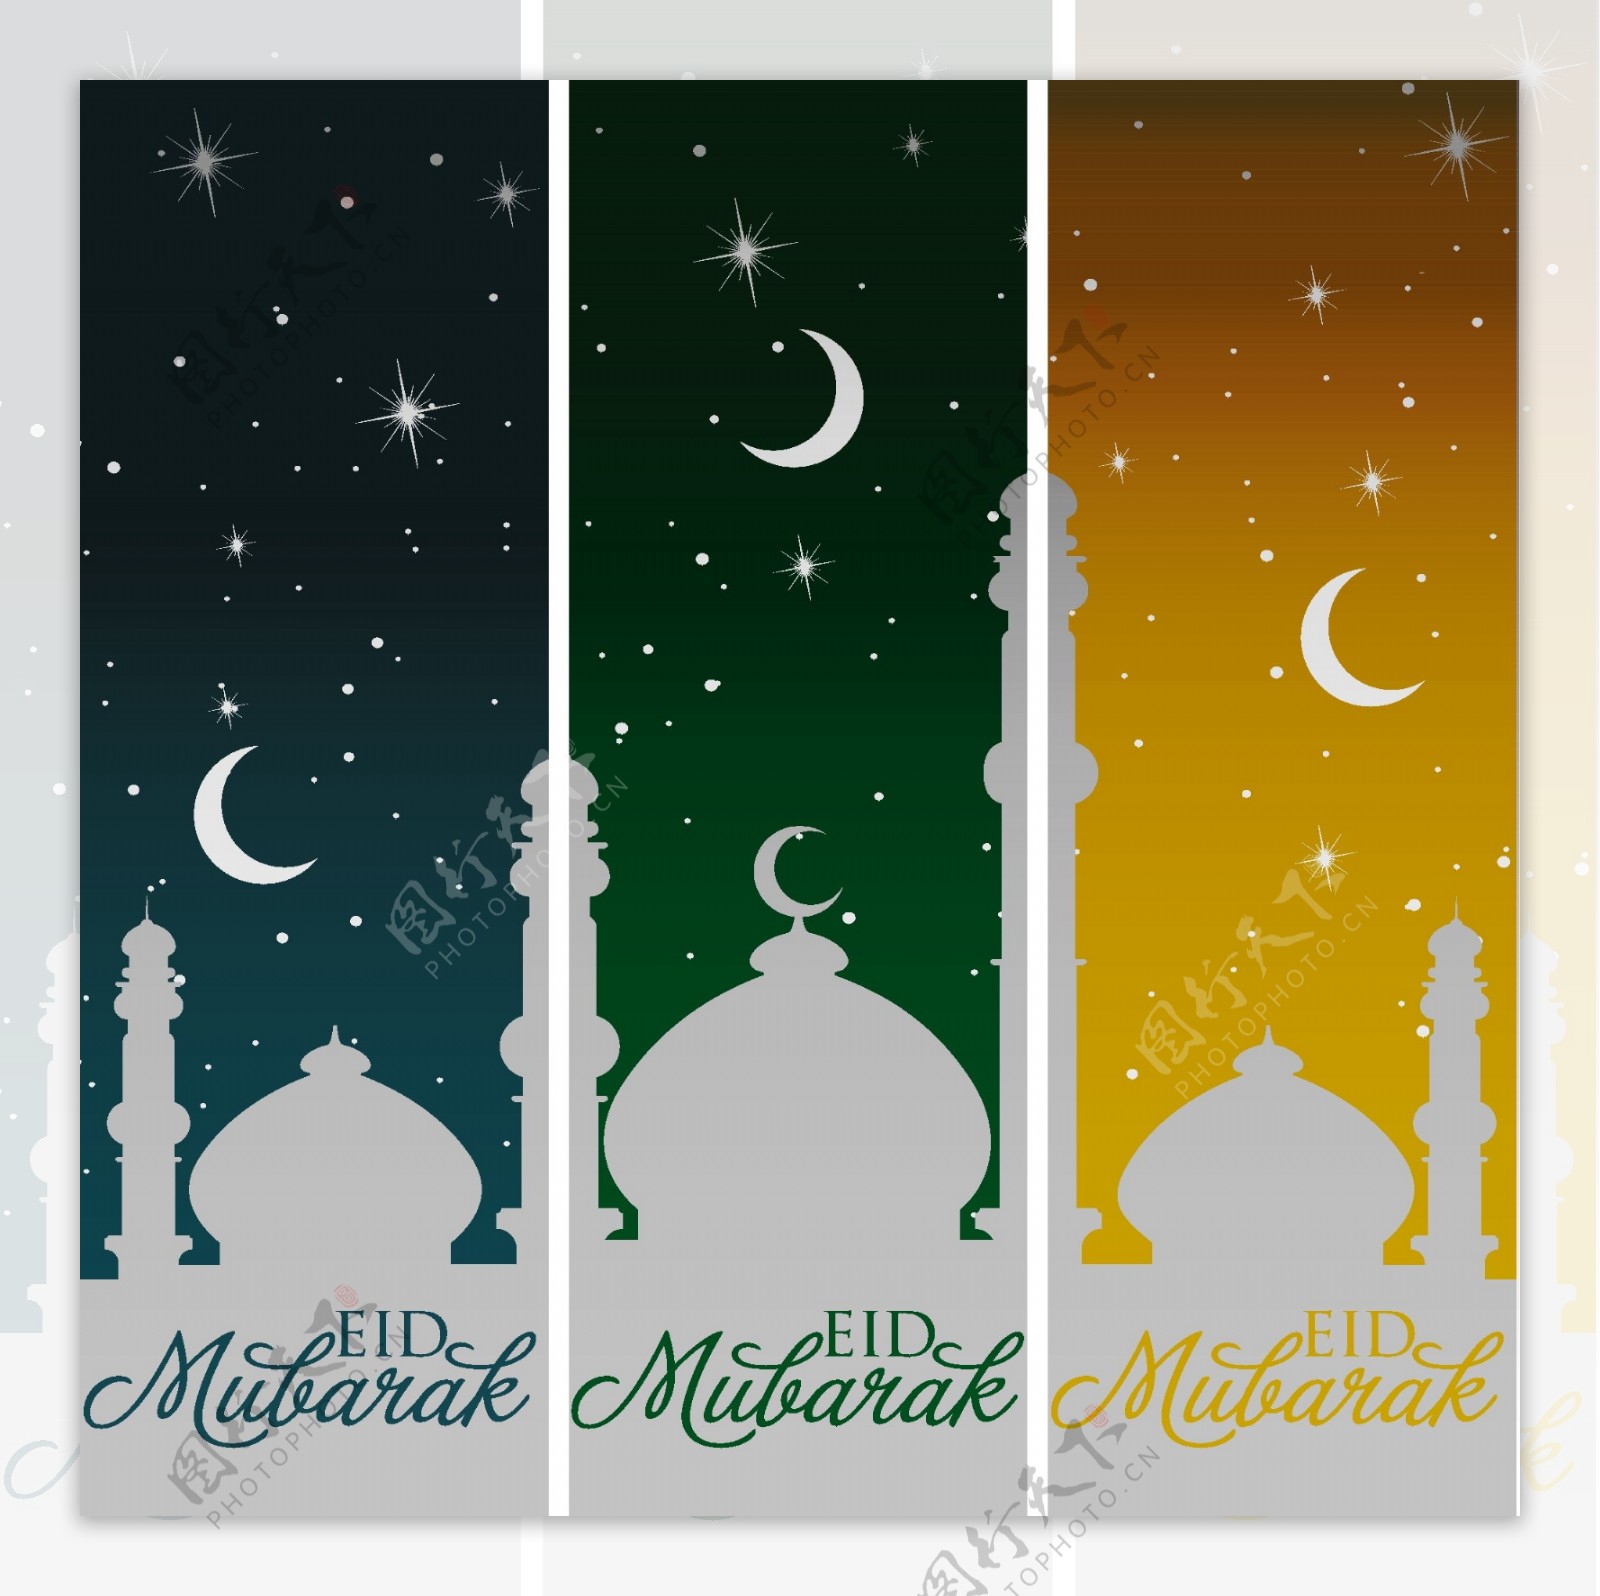 银的清真寺和月亮开斋节穆巴拉克神圣的EID矢量格式的旗帜